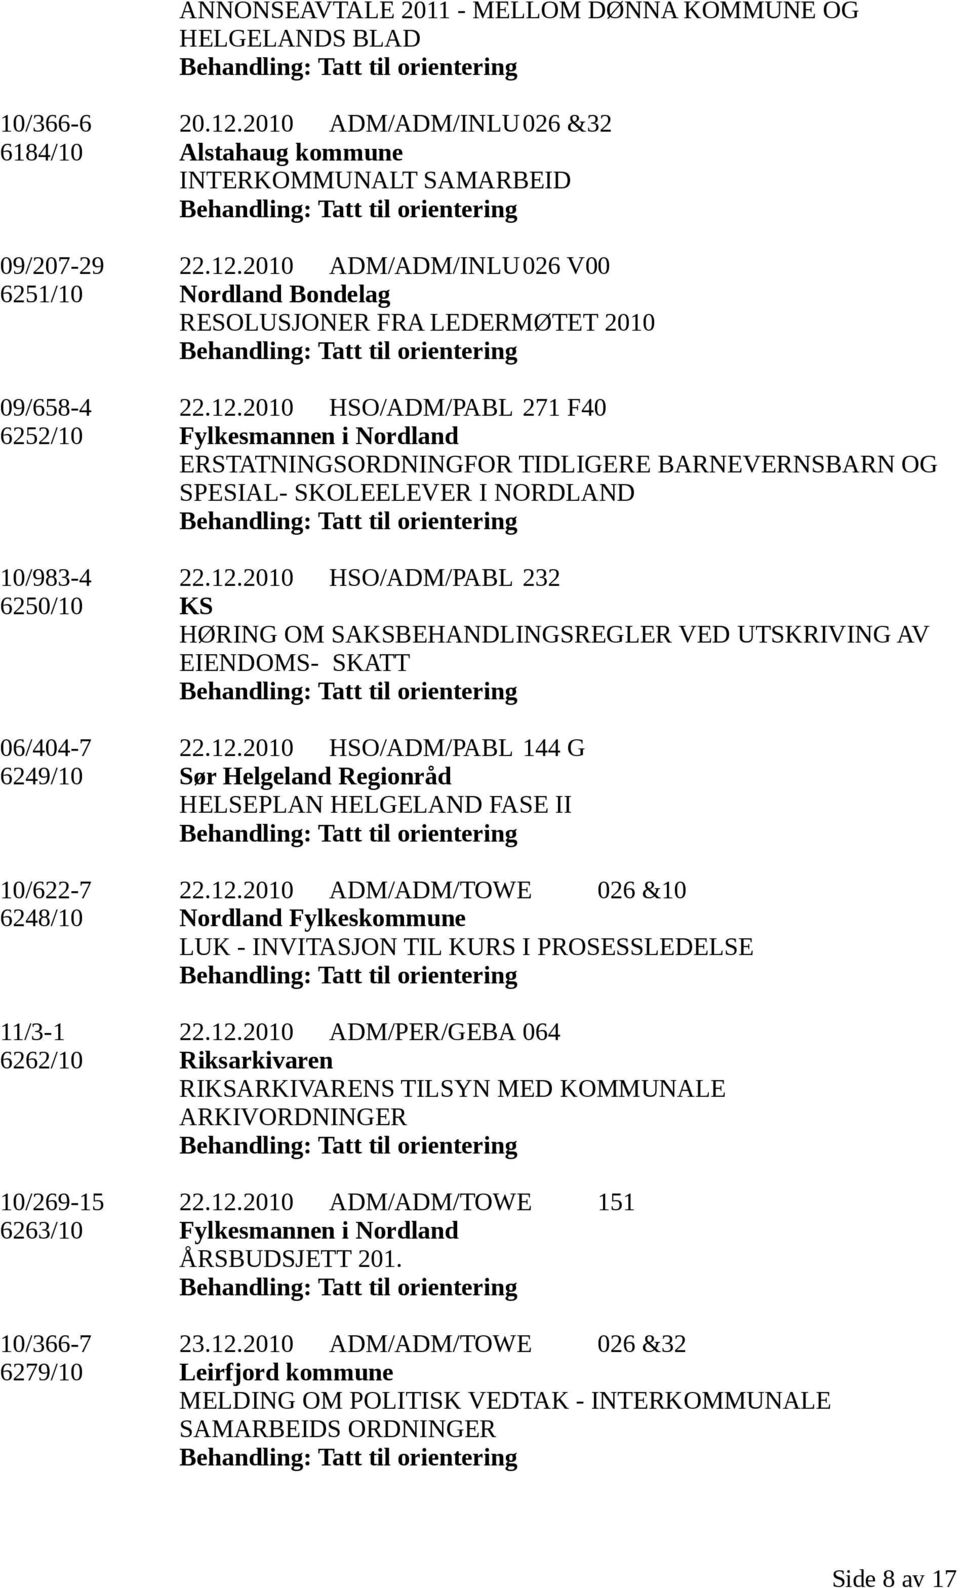 12.2010 HSO/ADM/PABL 144 G 6249/10 Sør Helgeland Regionråd HELSEPLAN HELGELAND FASE II 10/622-7 22.12.2010 ADM/ADM/TOWE 026 &10 6248/10 Nordland Fylkeskommune LUK - INVITASJON TIL KURS I PROSESSLEDELSE 11/3-1 22.